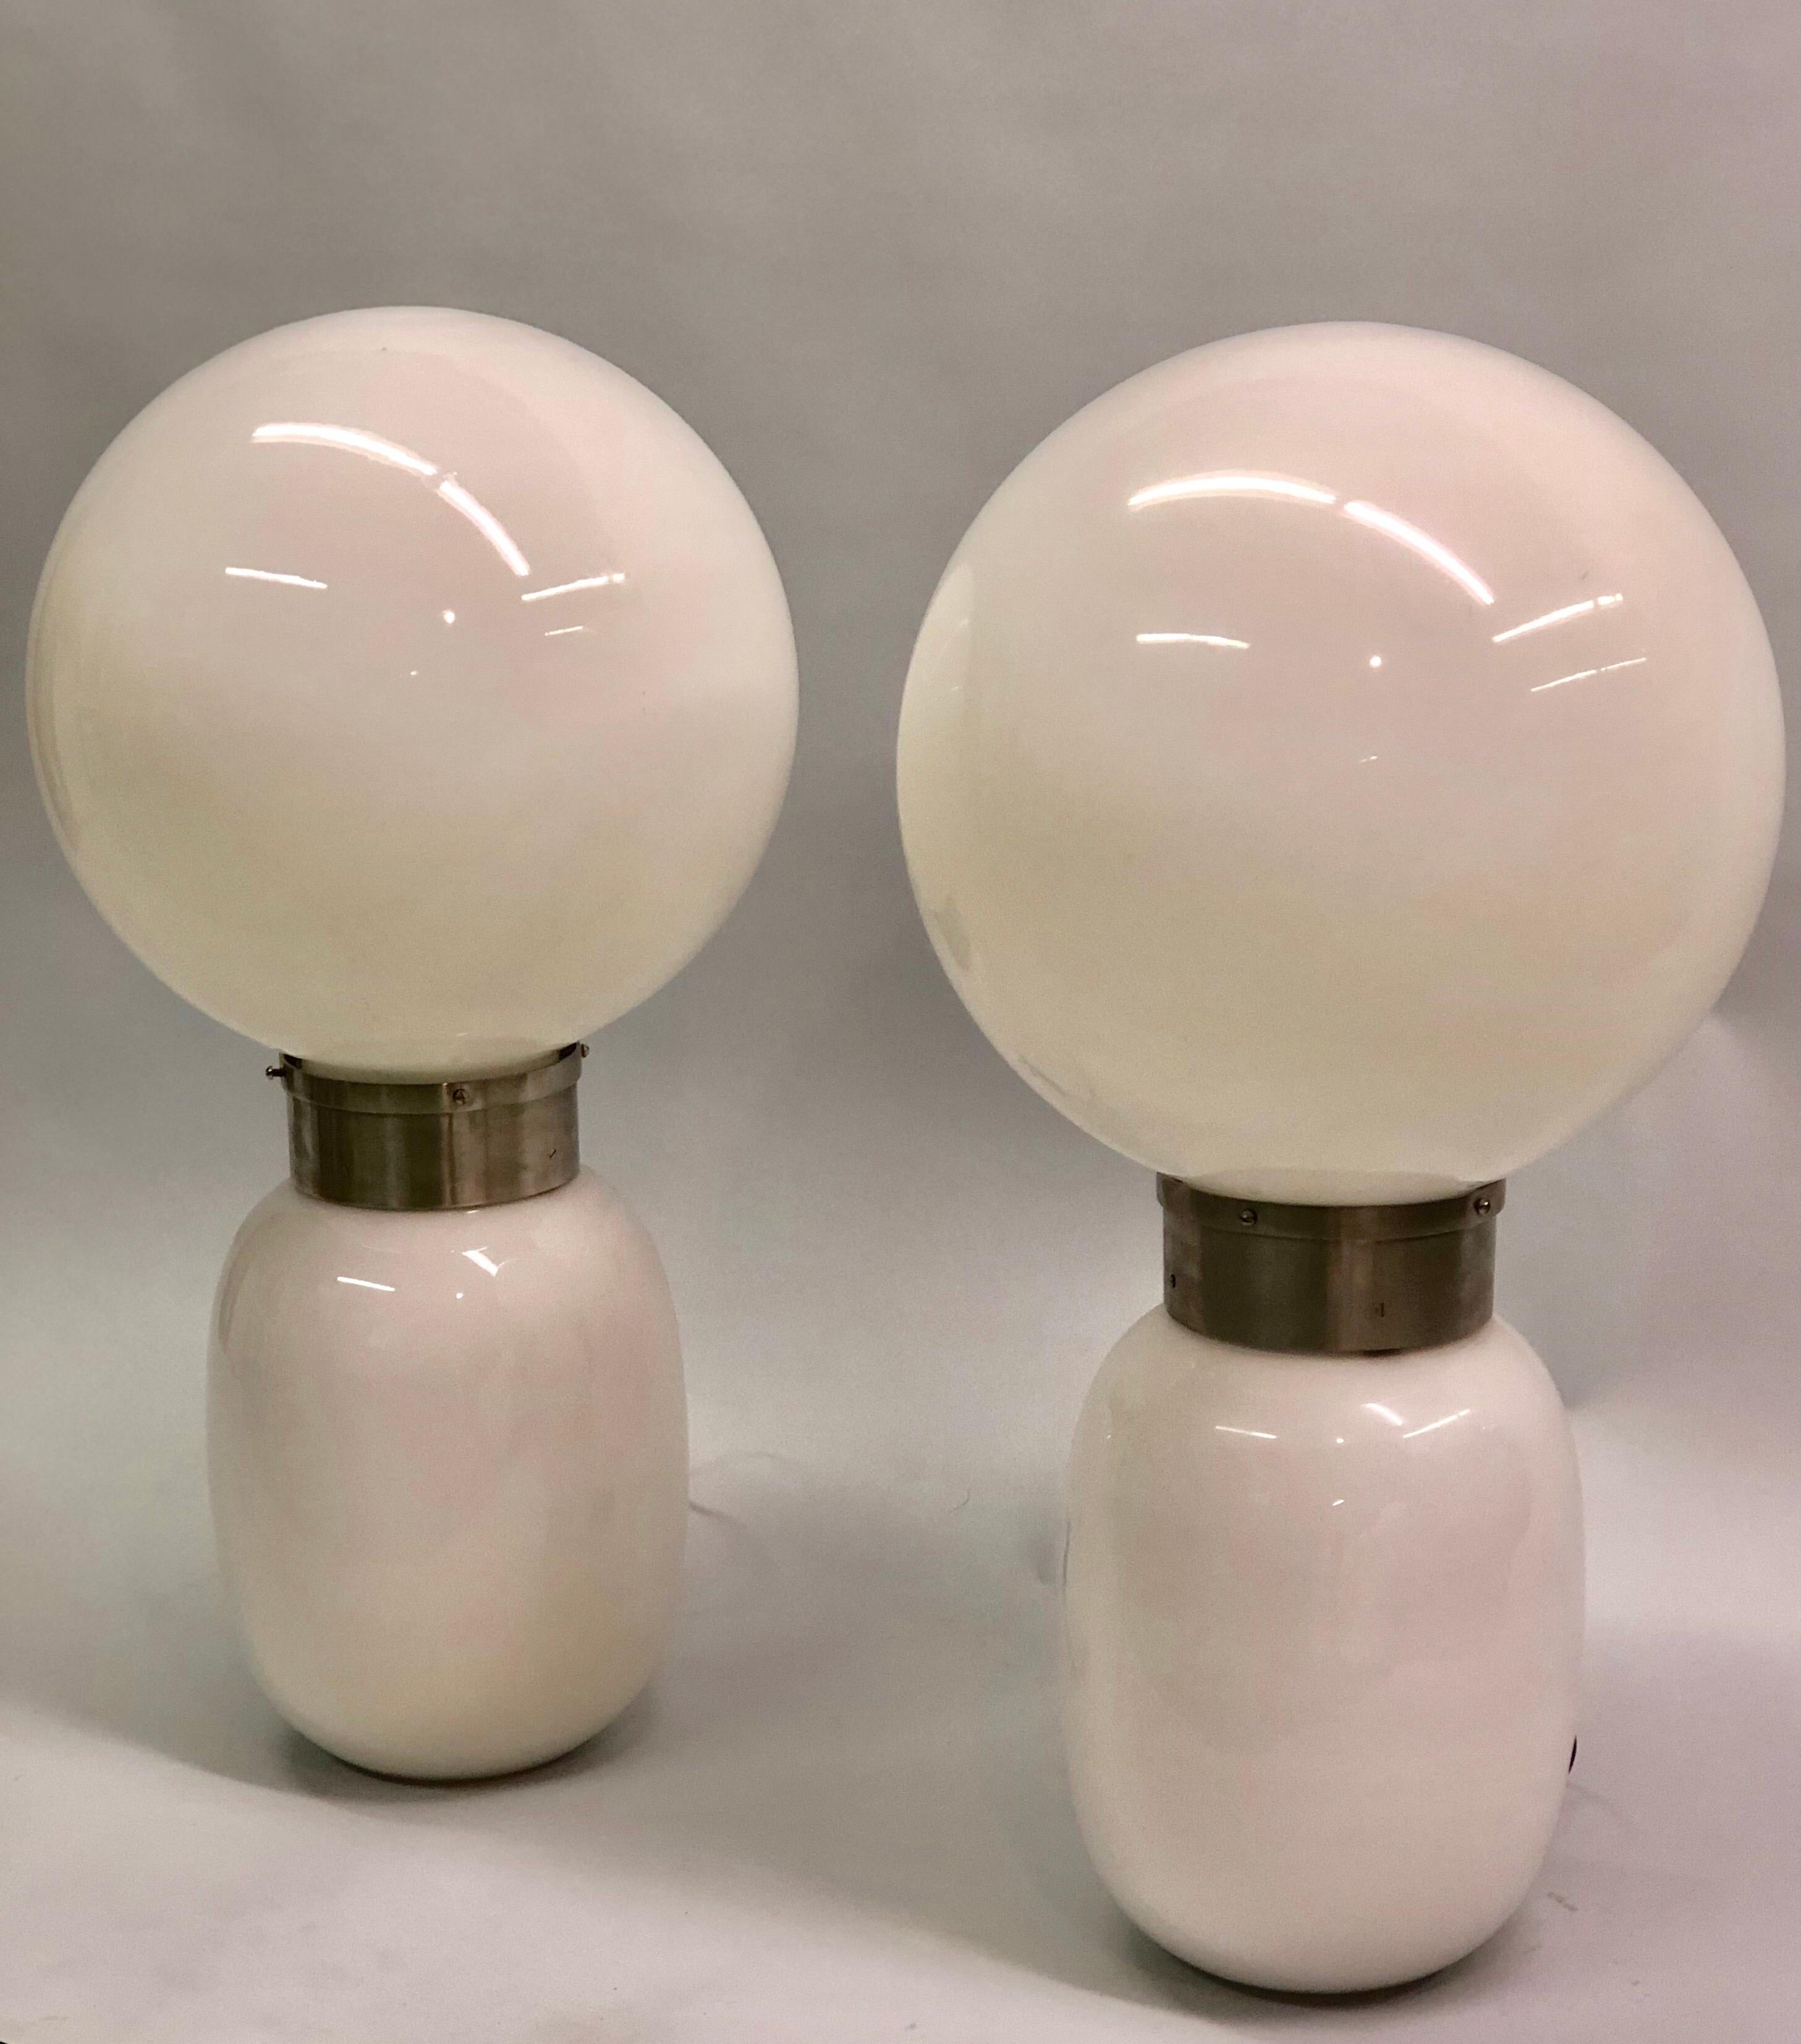 Rare paire de lampes de table en verre de lait de Murano soufflé à la bouche par Carlo Nason.

Ces lampes, dont le concept et la conception relèvent de l'ère spatiale, fonctionnent à la fois de manière pratique et comme des sculptures lumineuses,